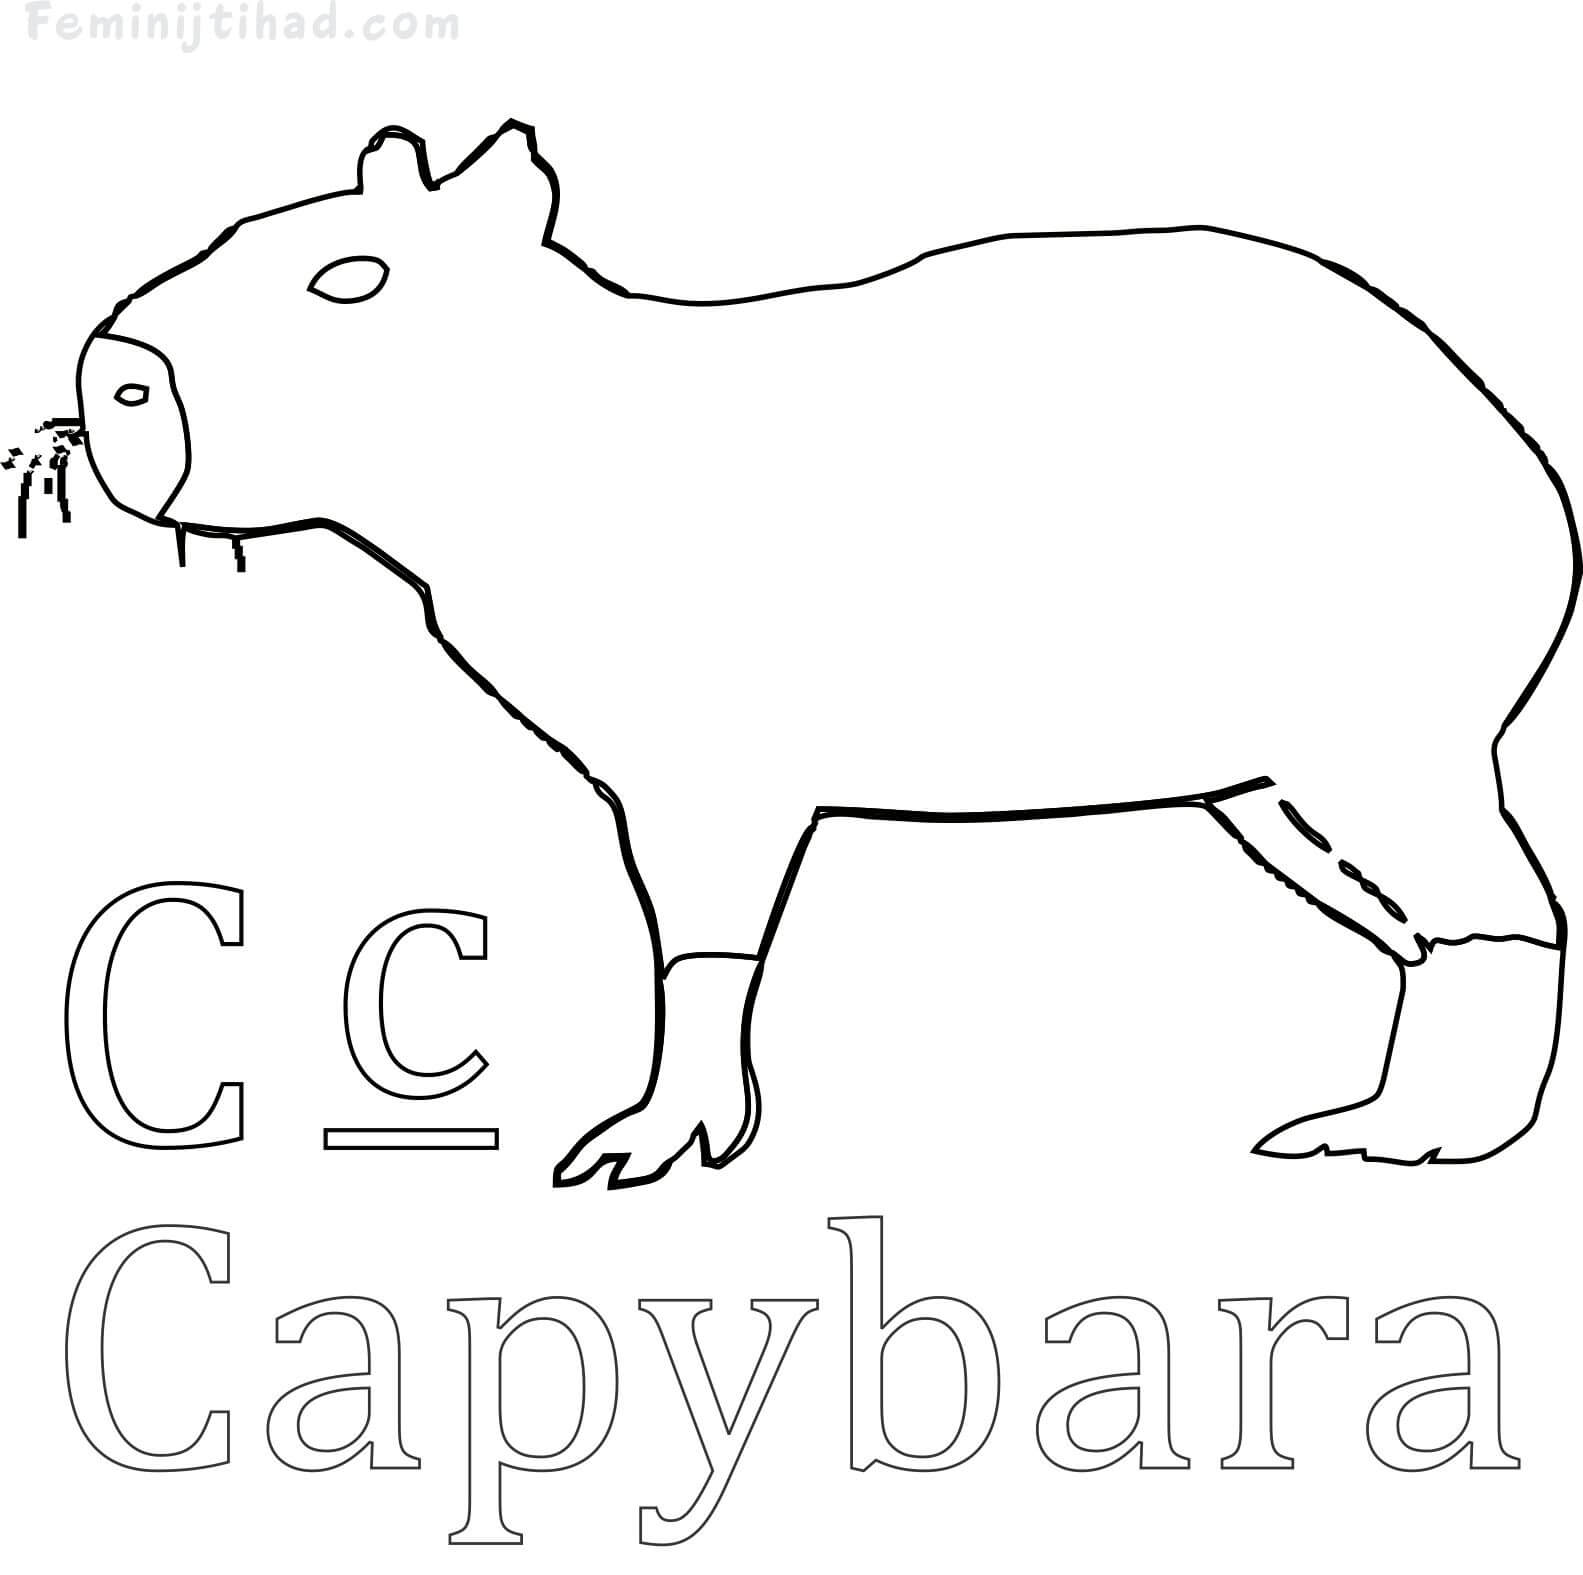 Capybara Coloring Page to Print